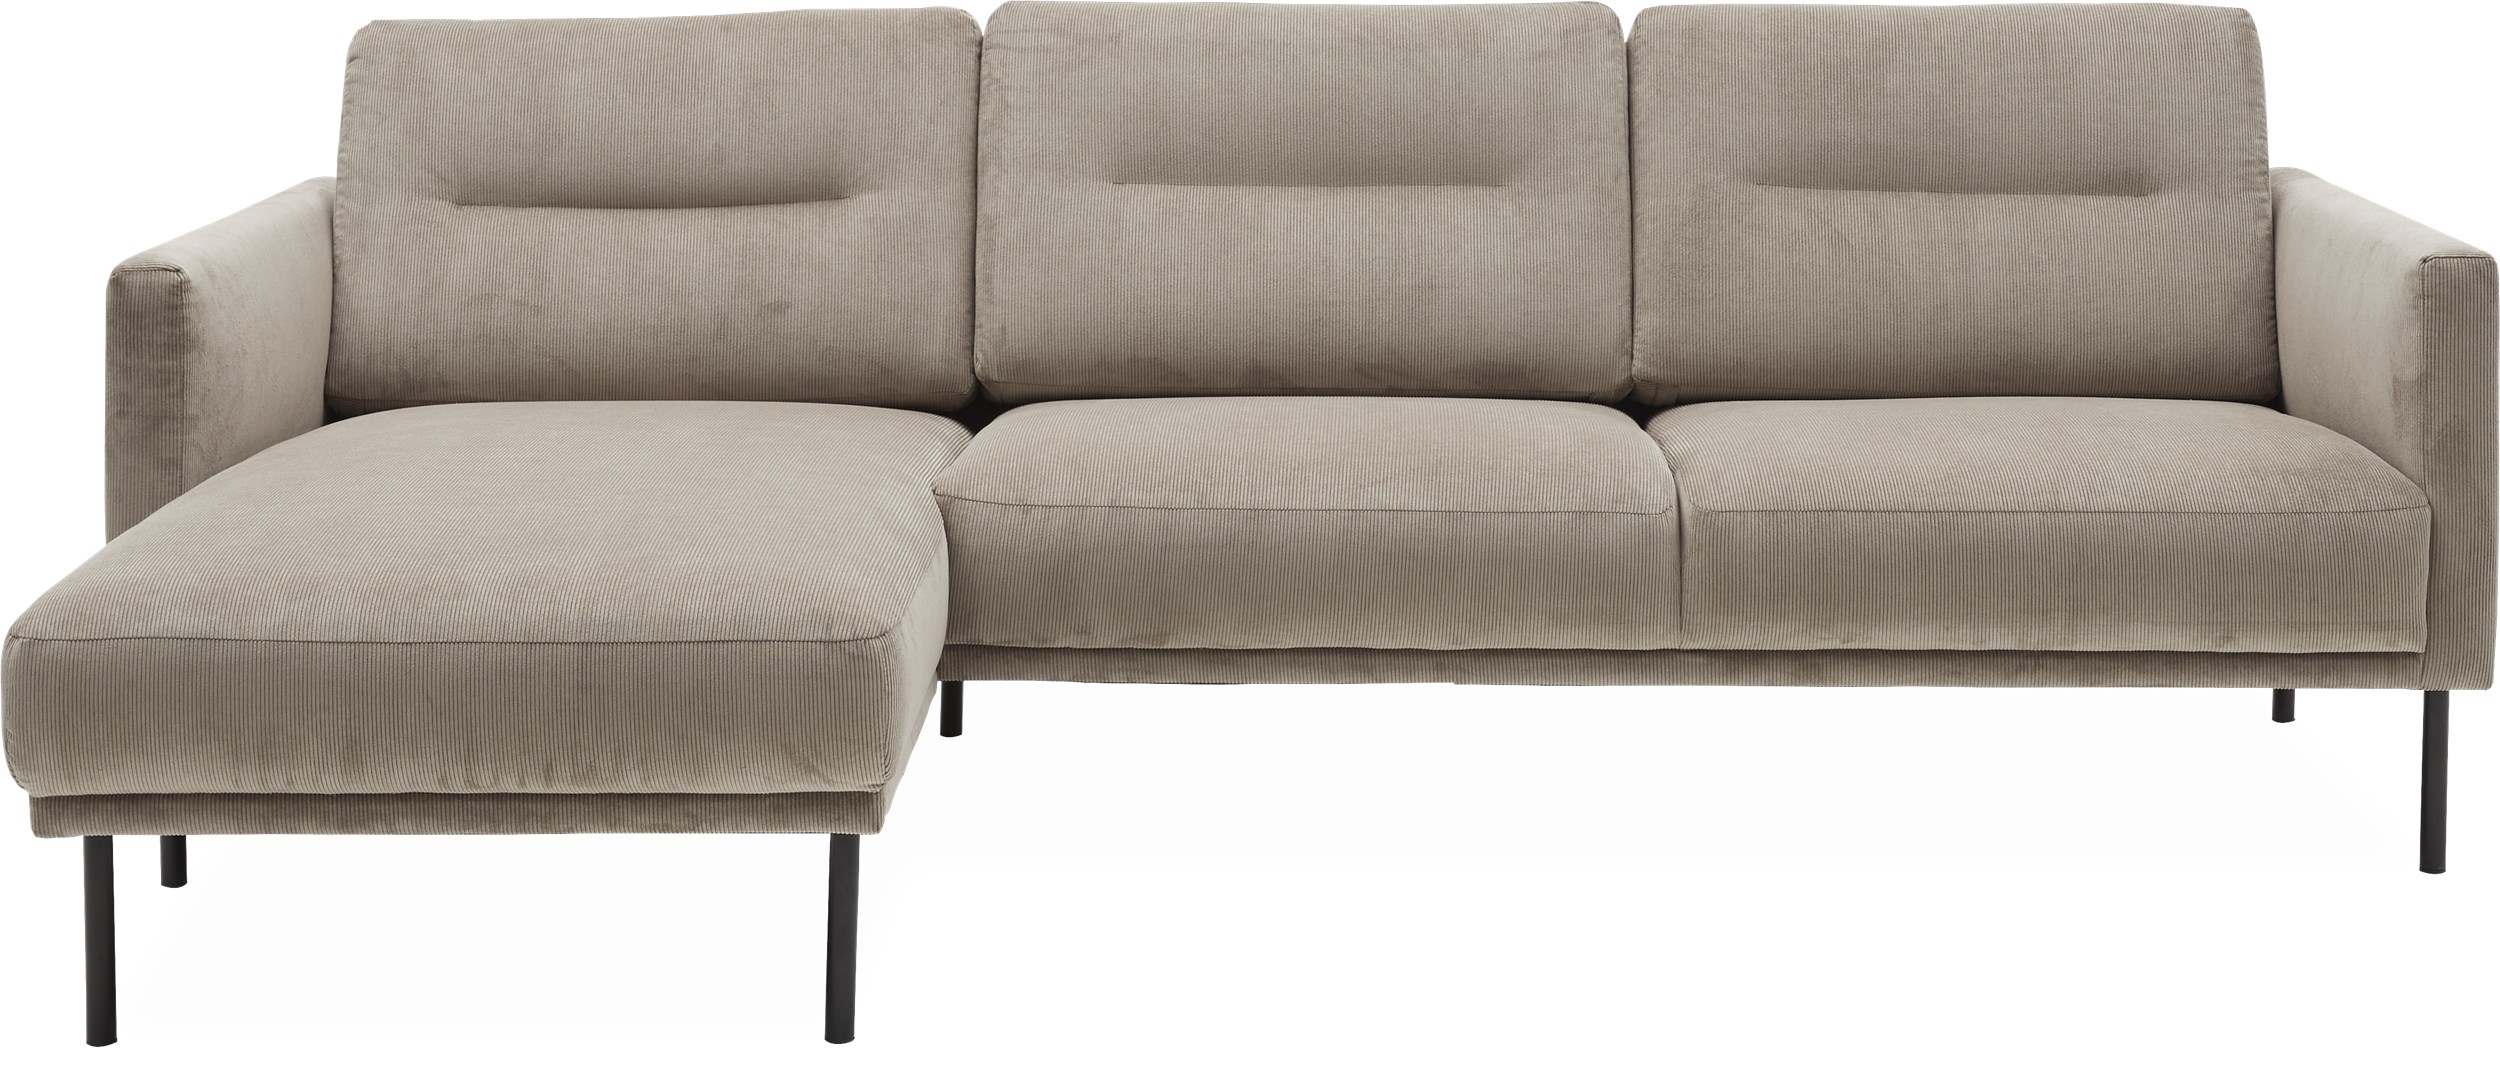 Larvik venstrevendt sofa med chaiselong - Wave 70 Sand stof og ben i sortlakeret metal